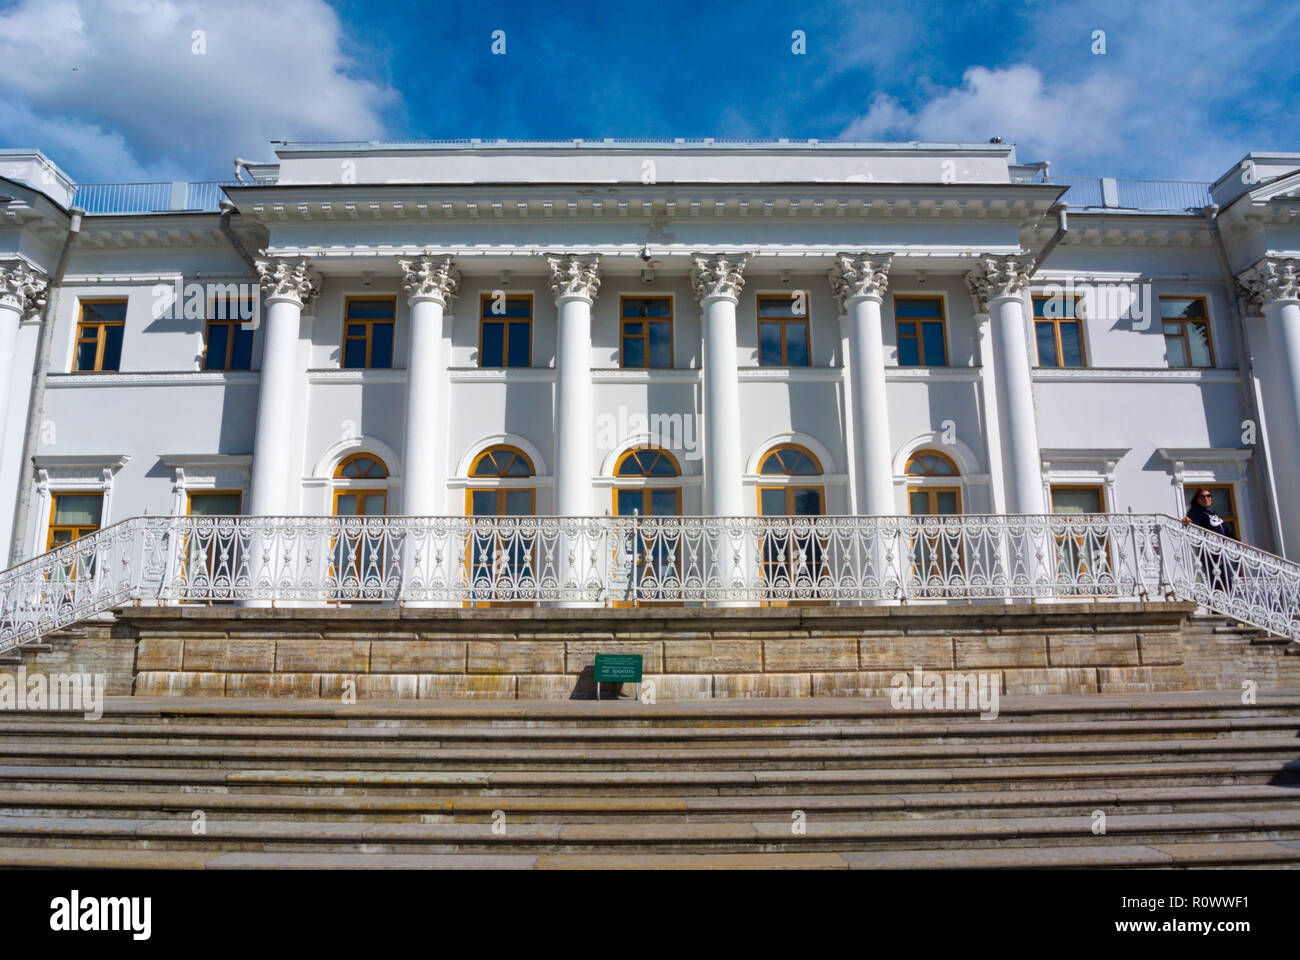 Yelaginsky Yelagin Dvorets, Palace, île Yelagin, Saint Petersburg, Russie Banque D'Images